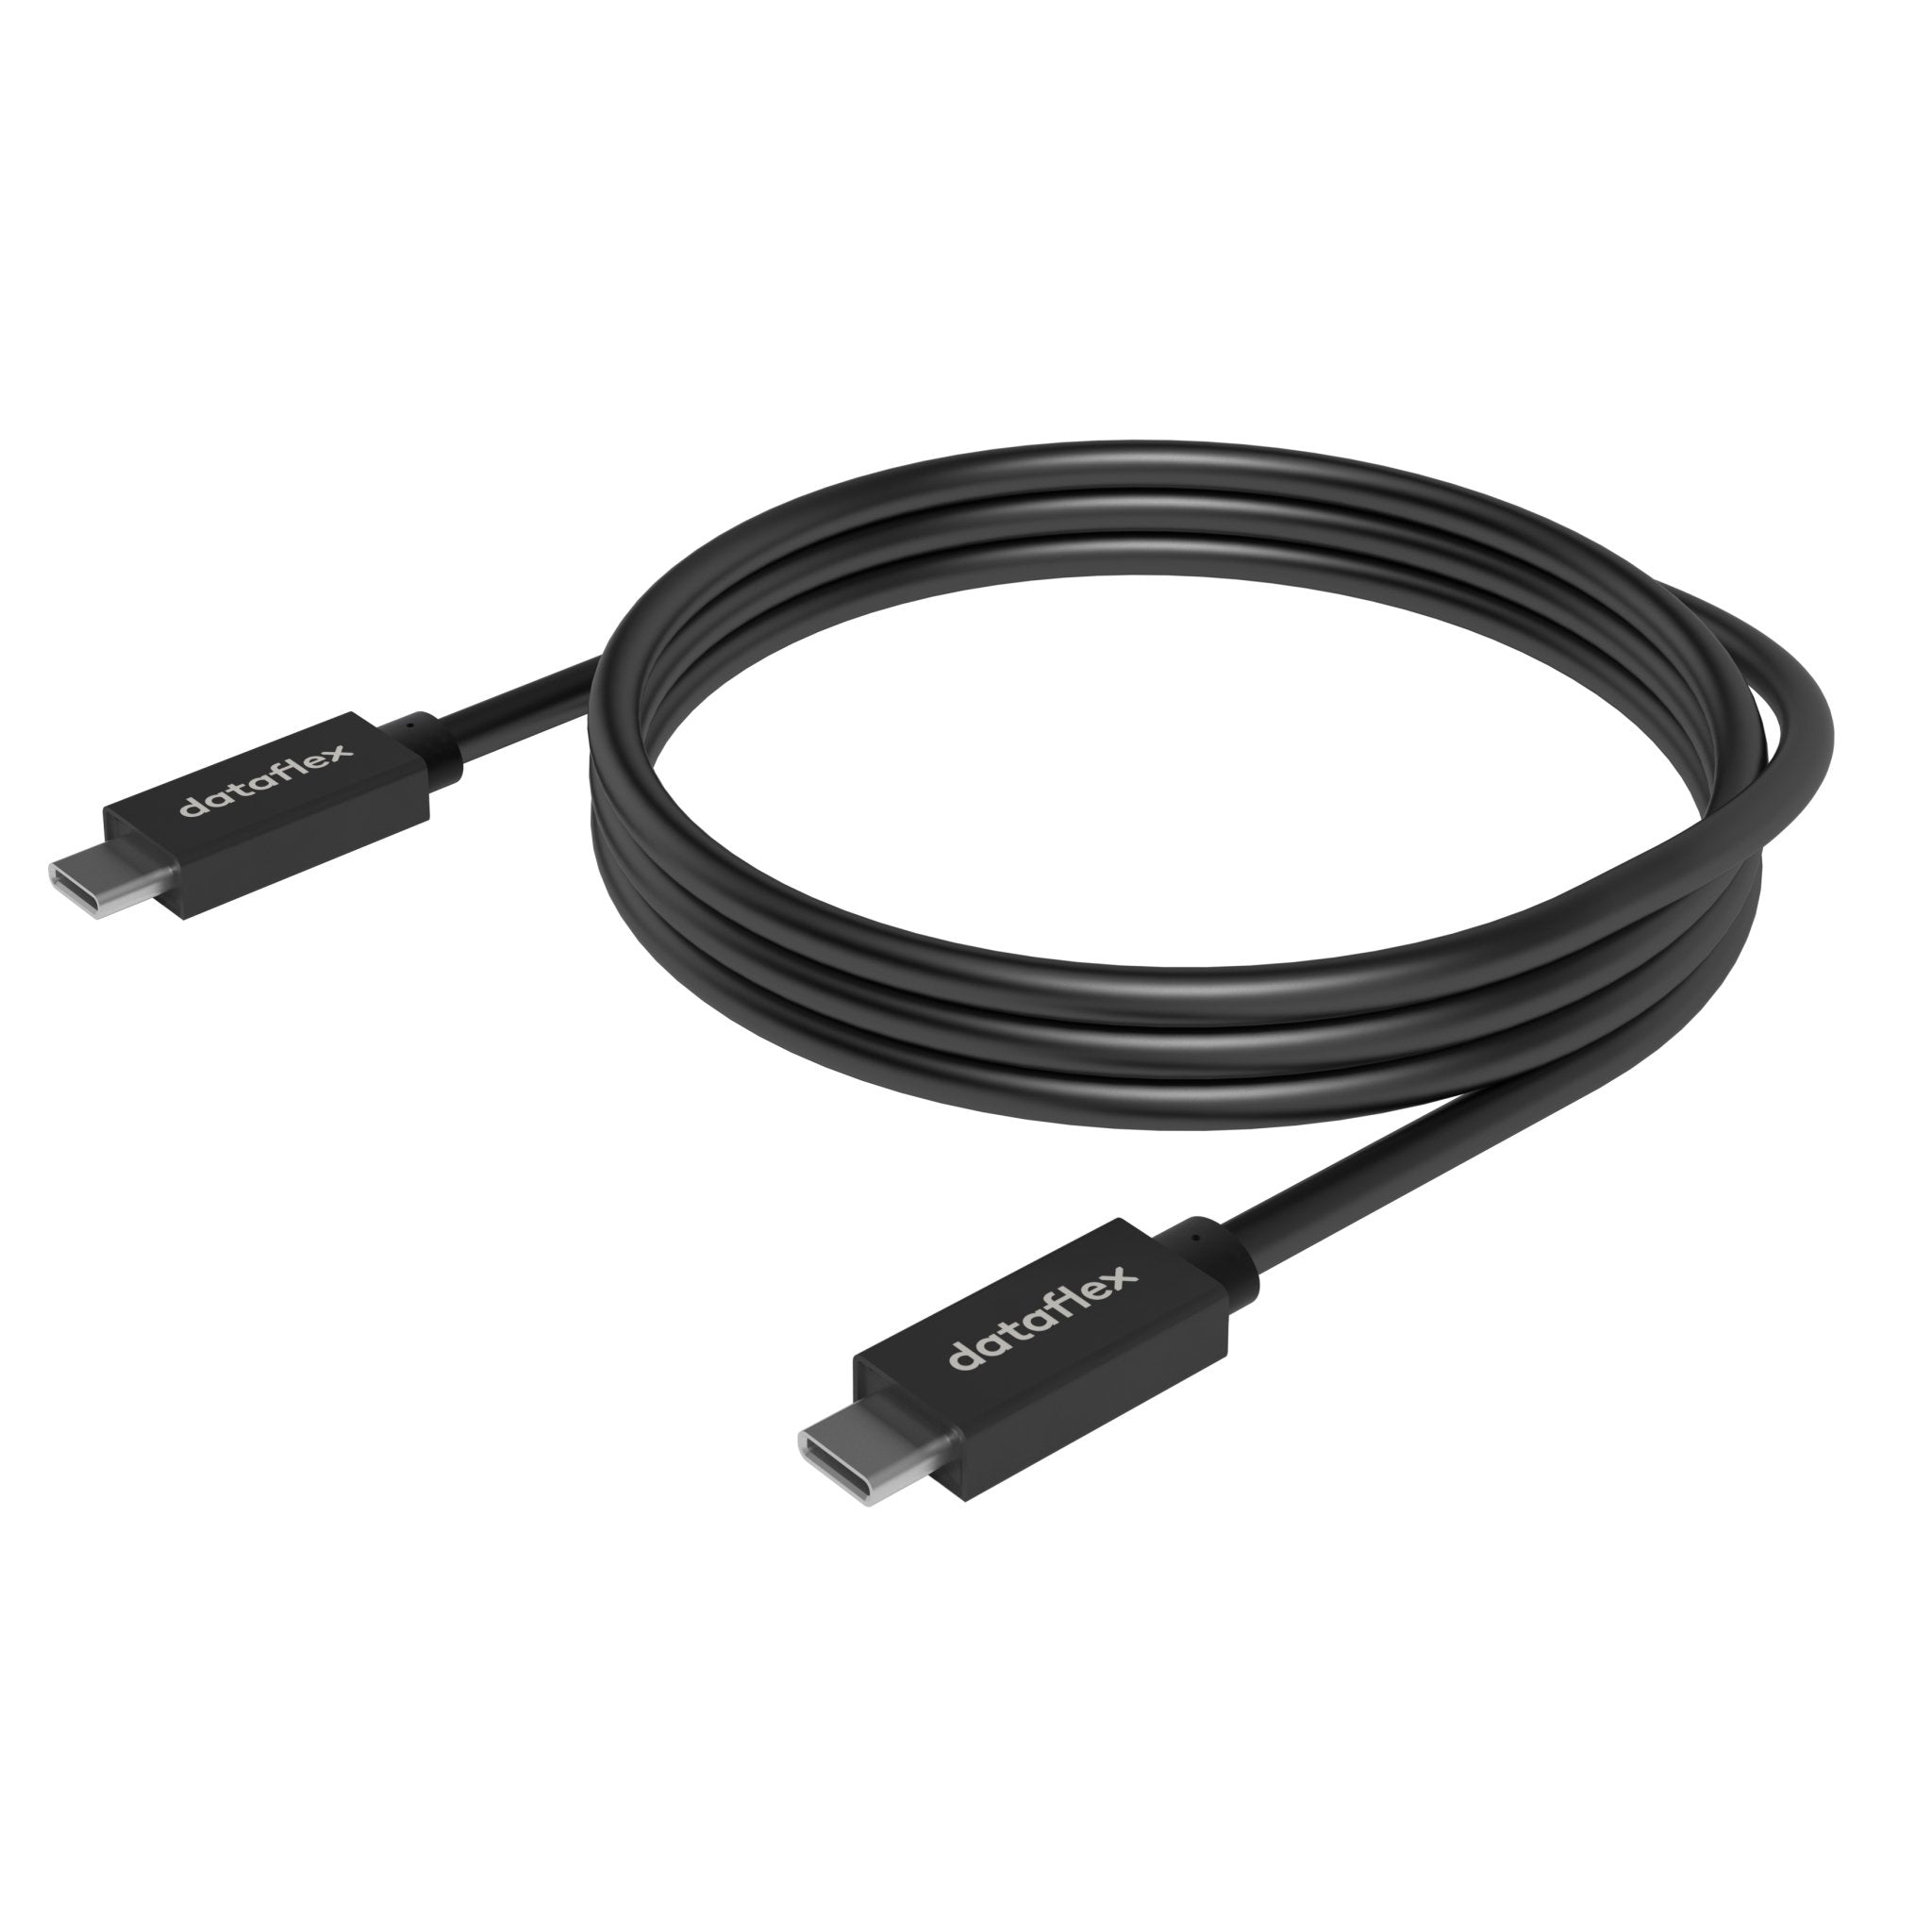 Zwarte USB-C kabel uit de Viewlite collectie van Dataflex